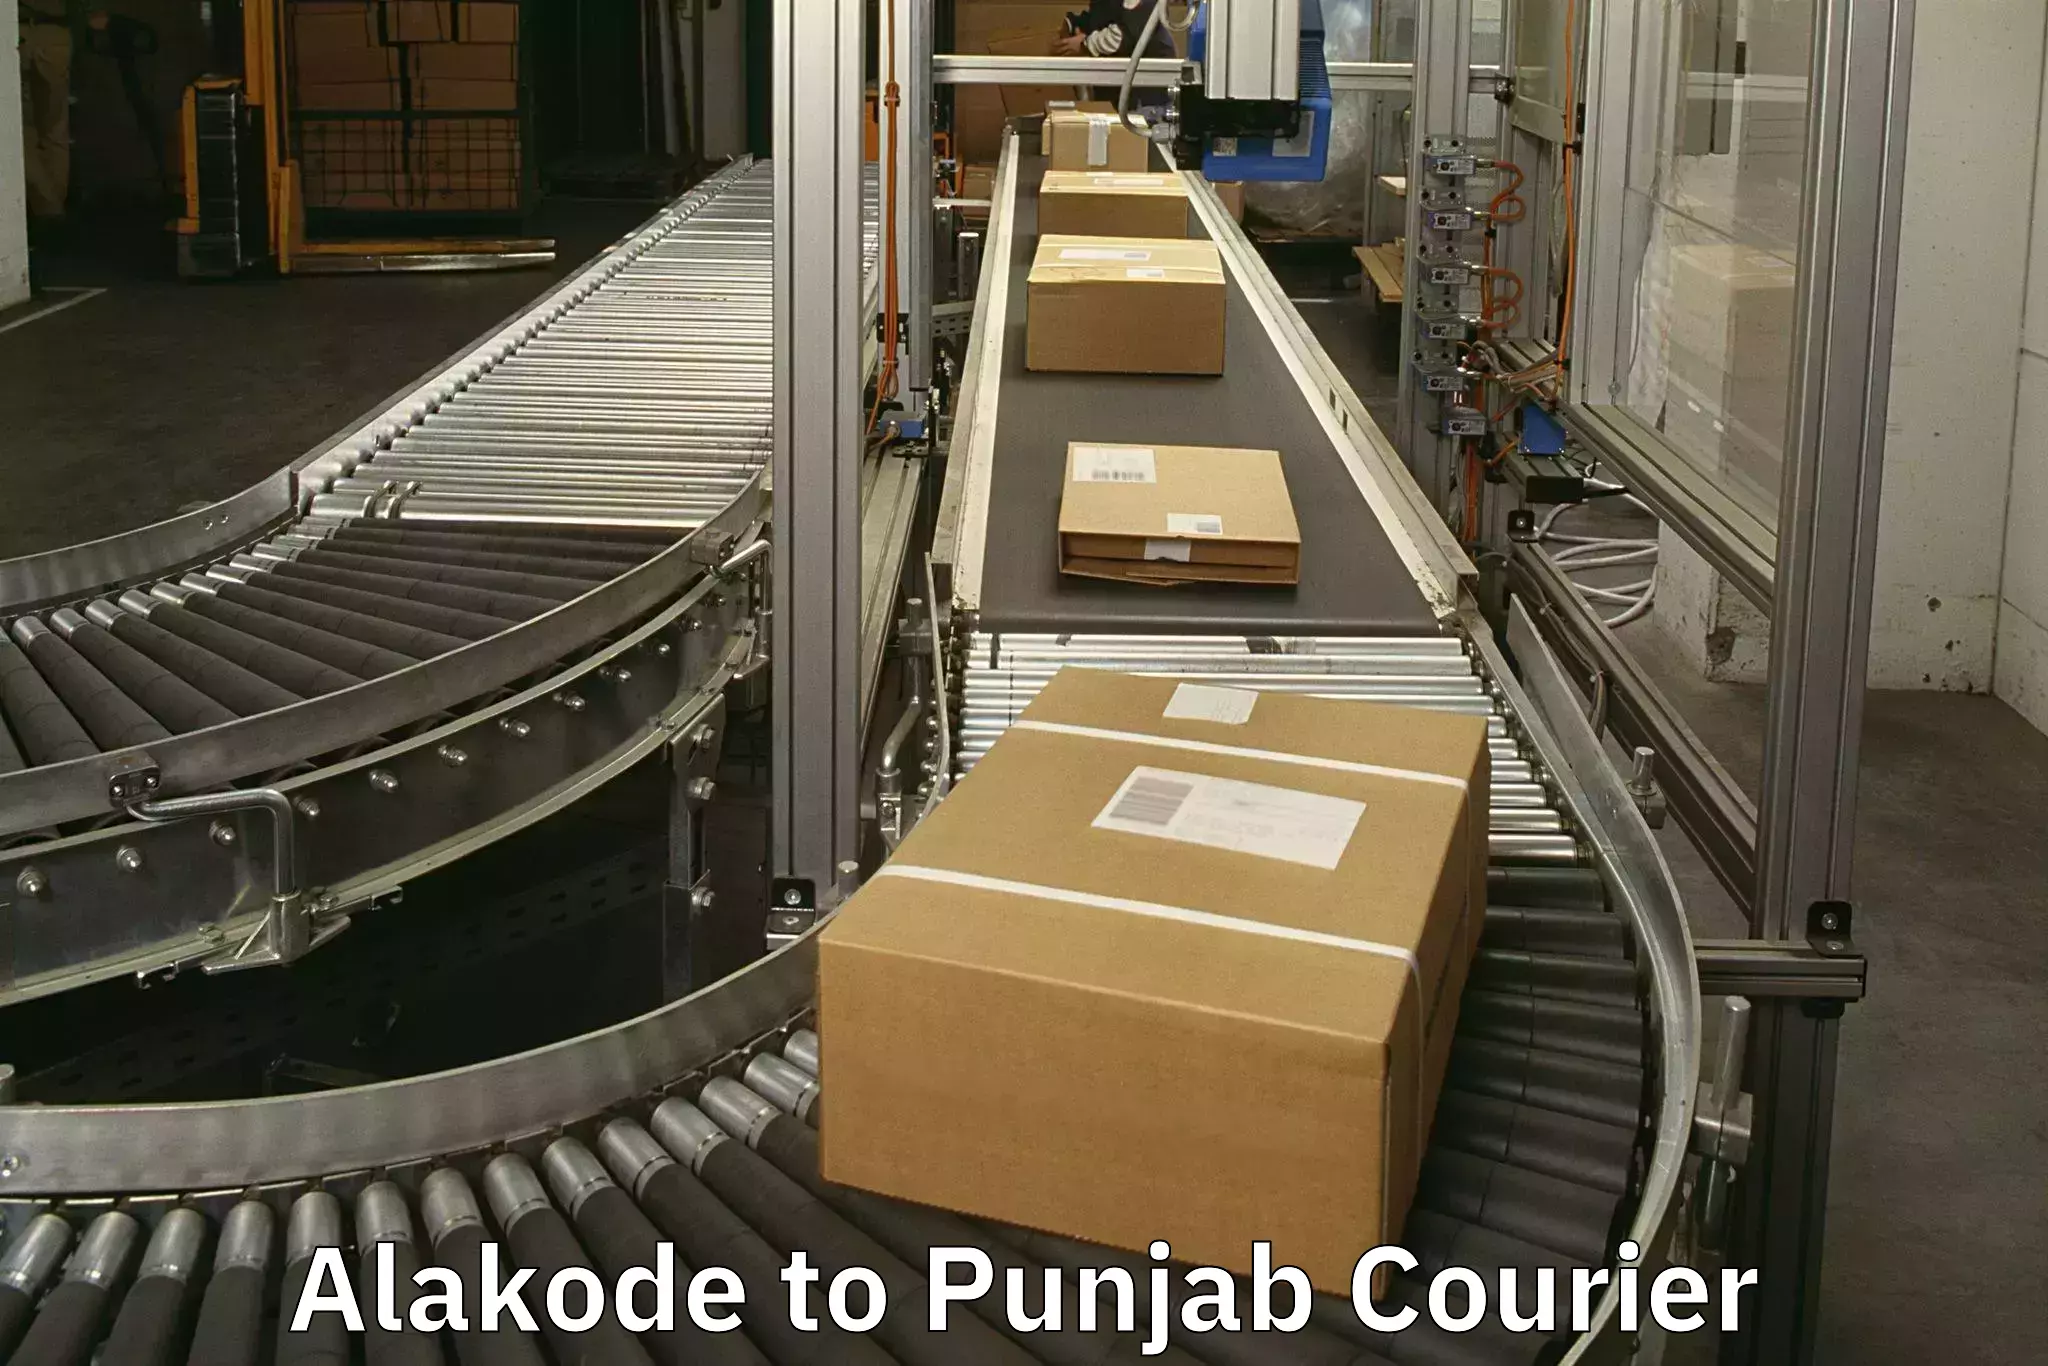 Luggage transit service Alakode to Punjab